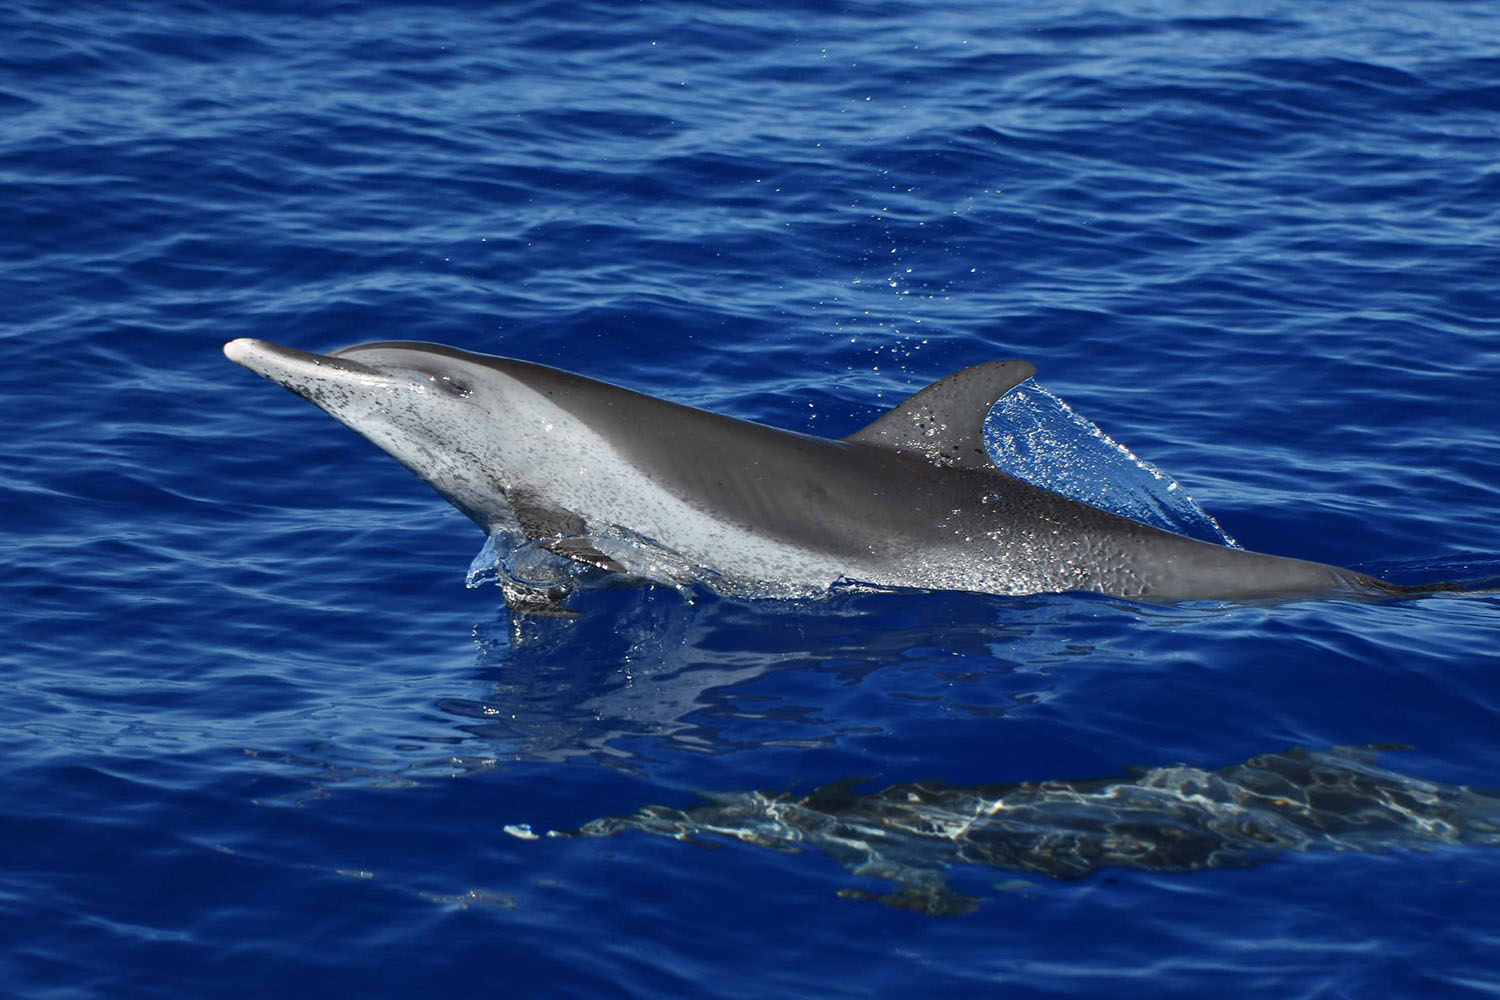 voyage scientifique cetaces et faune marine de guadeloupe copyright Cedric Millon 36